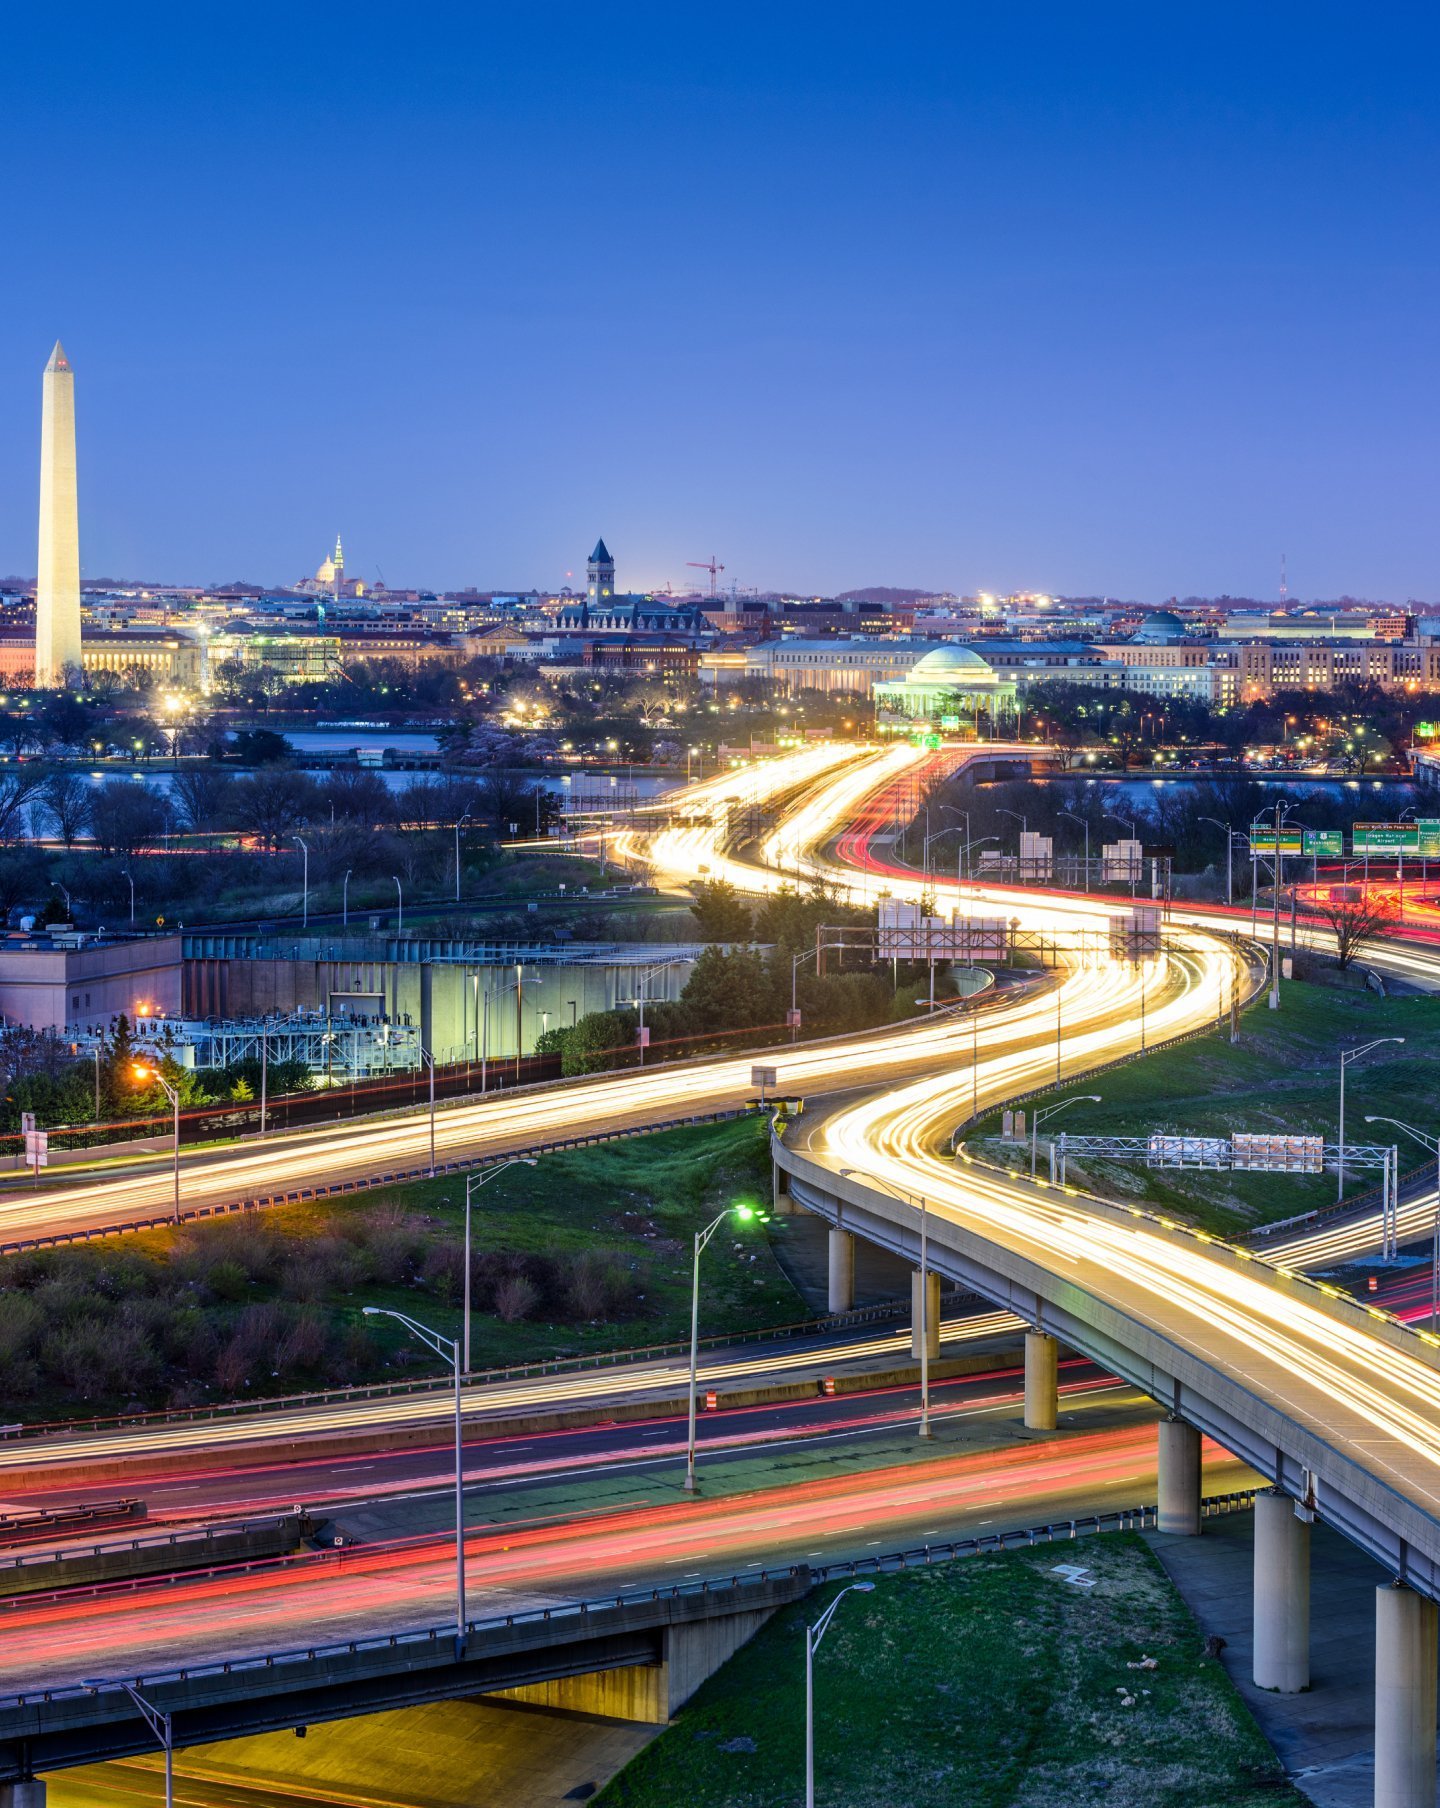 Washington, D.C. highways with the Washington Monument lit up at night